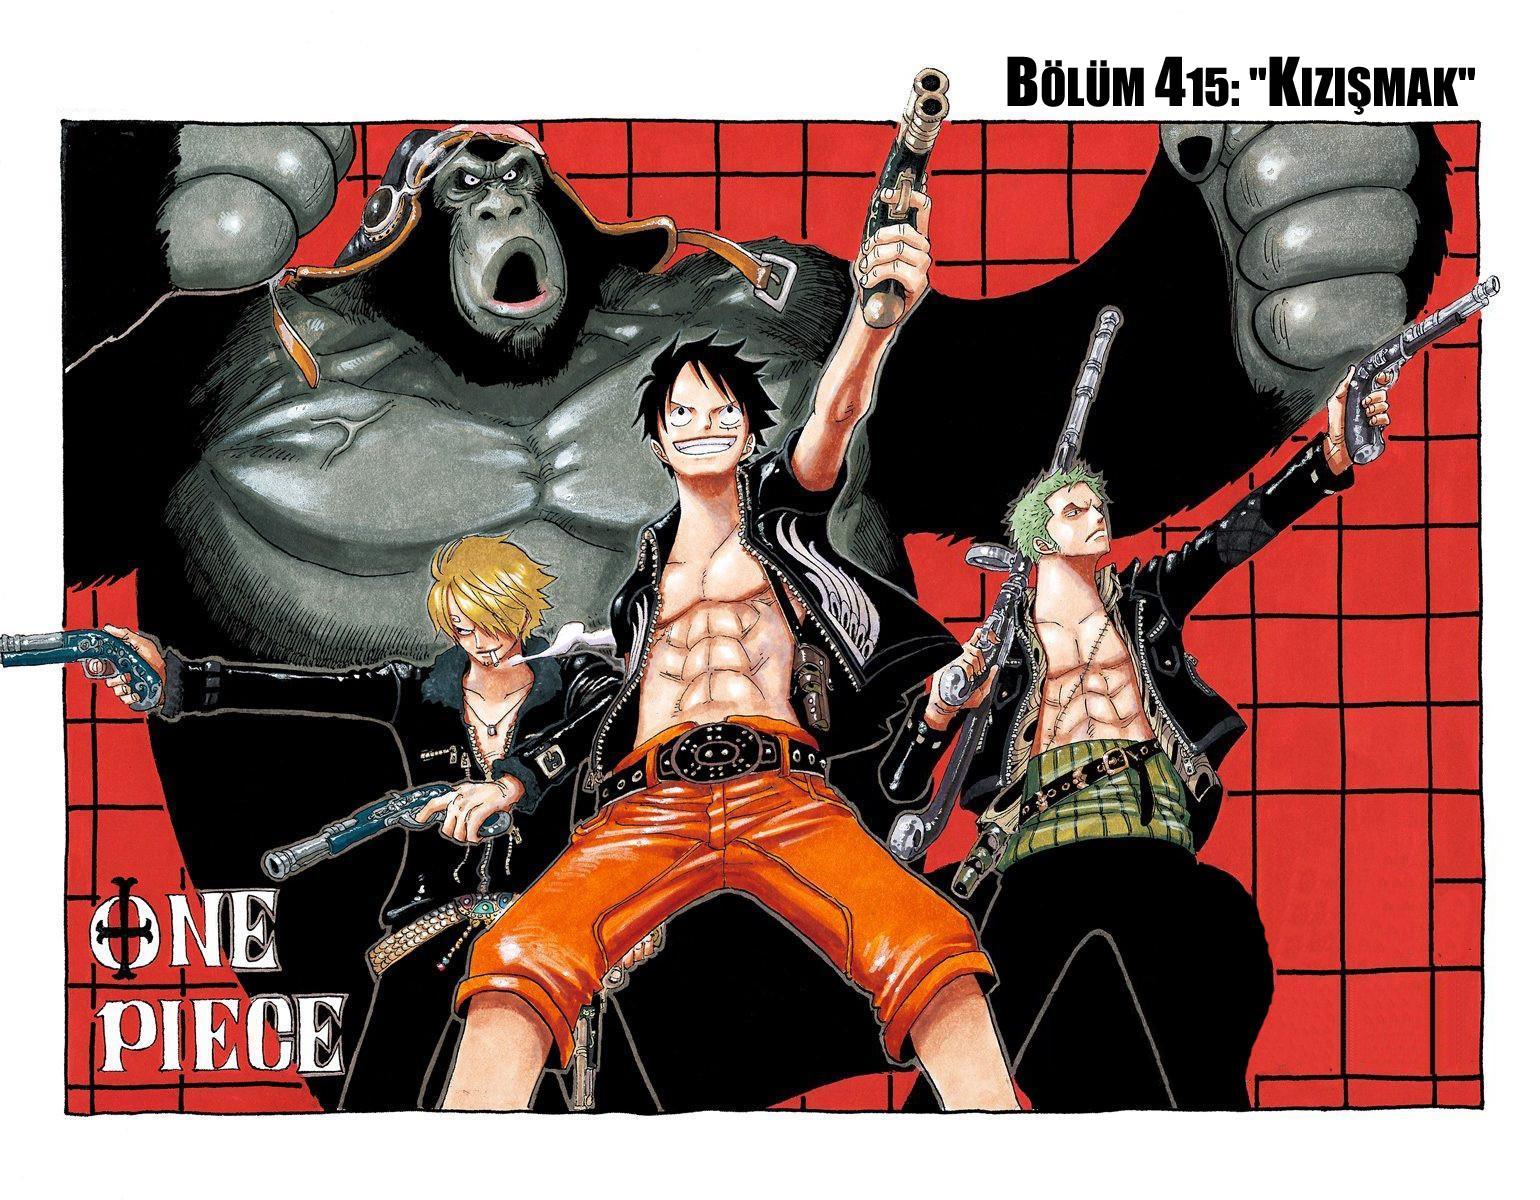 One Piece [Renkli] mangasının 0415 bölümünün 2. sayfasını okuyorsunuz.